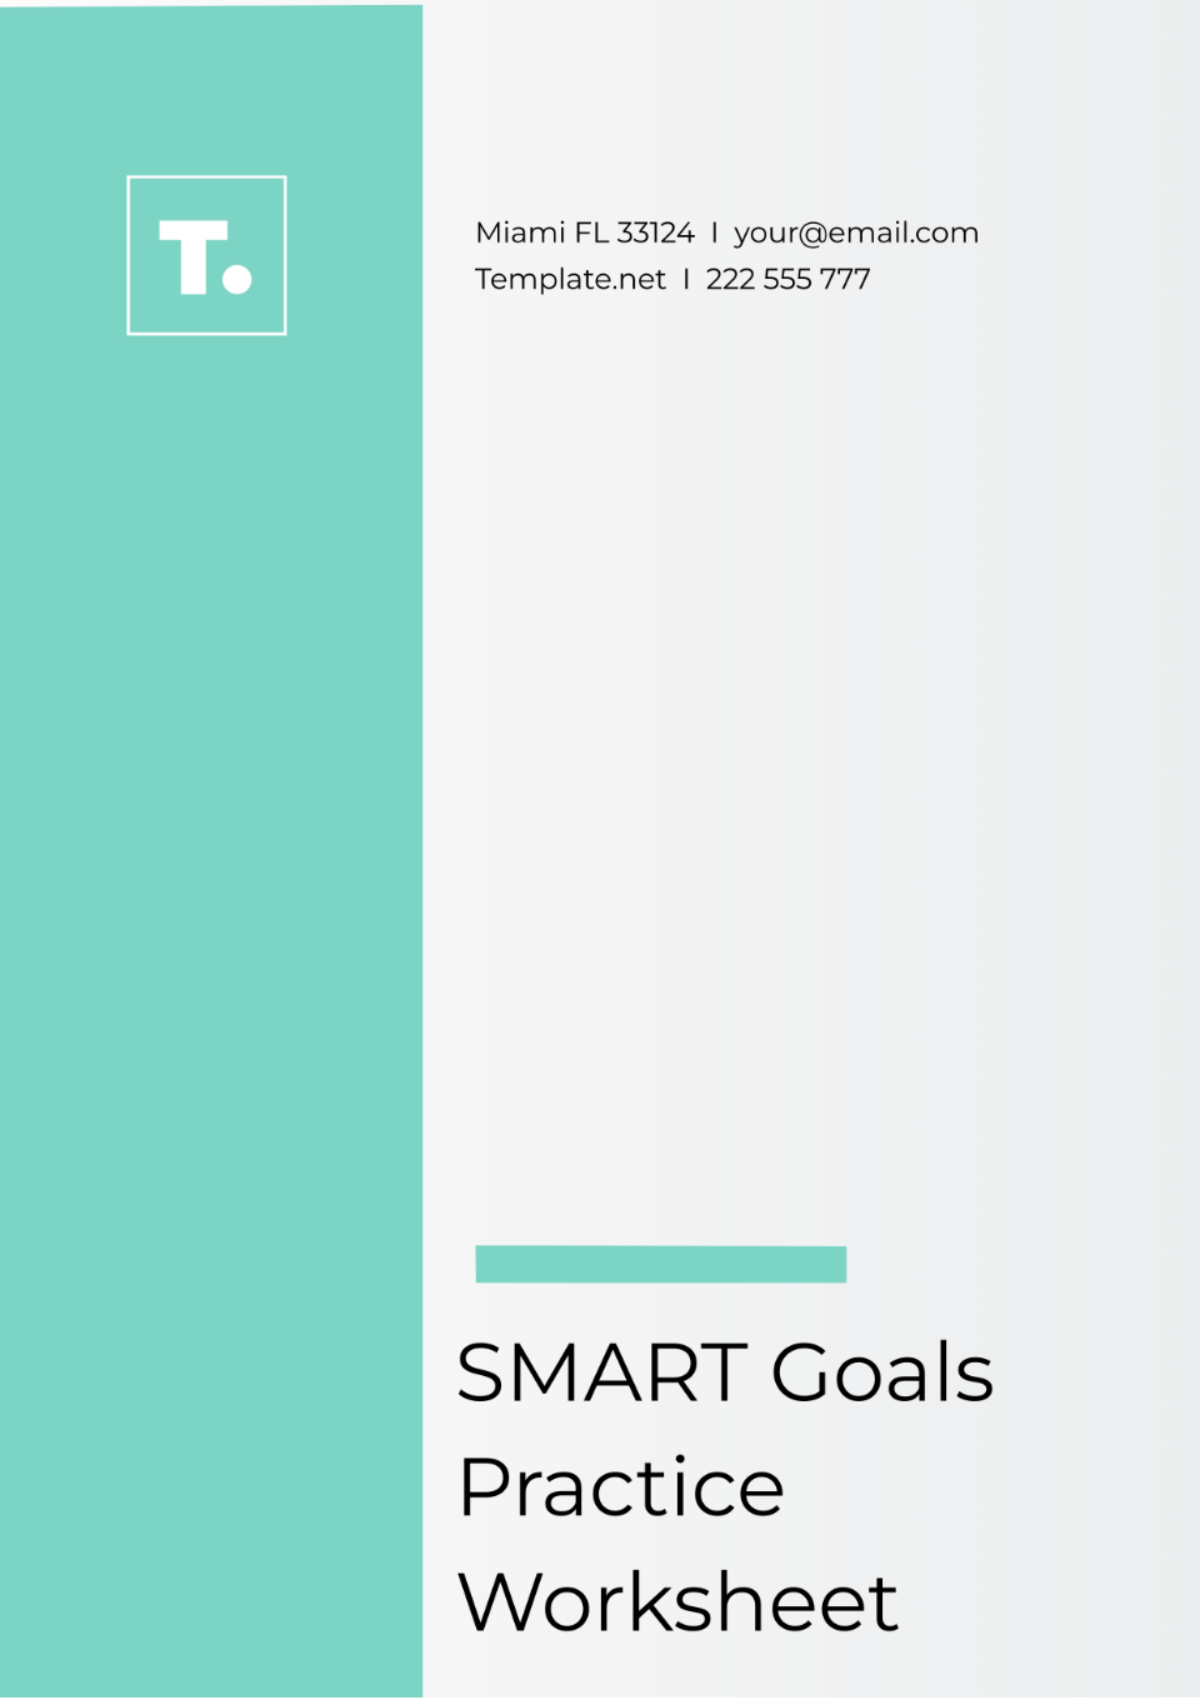 SMART Goals Practice Worksheet Template